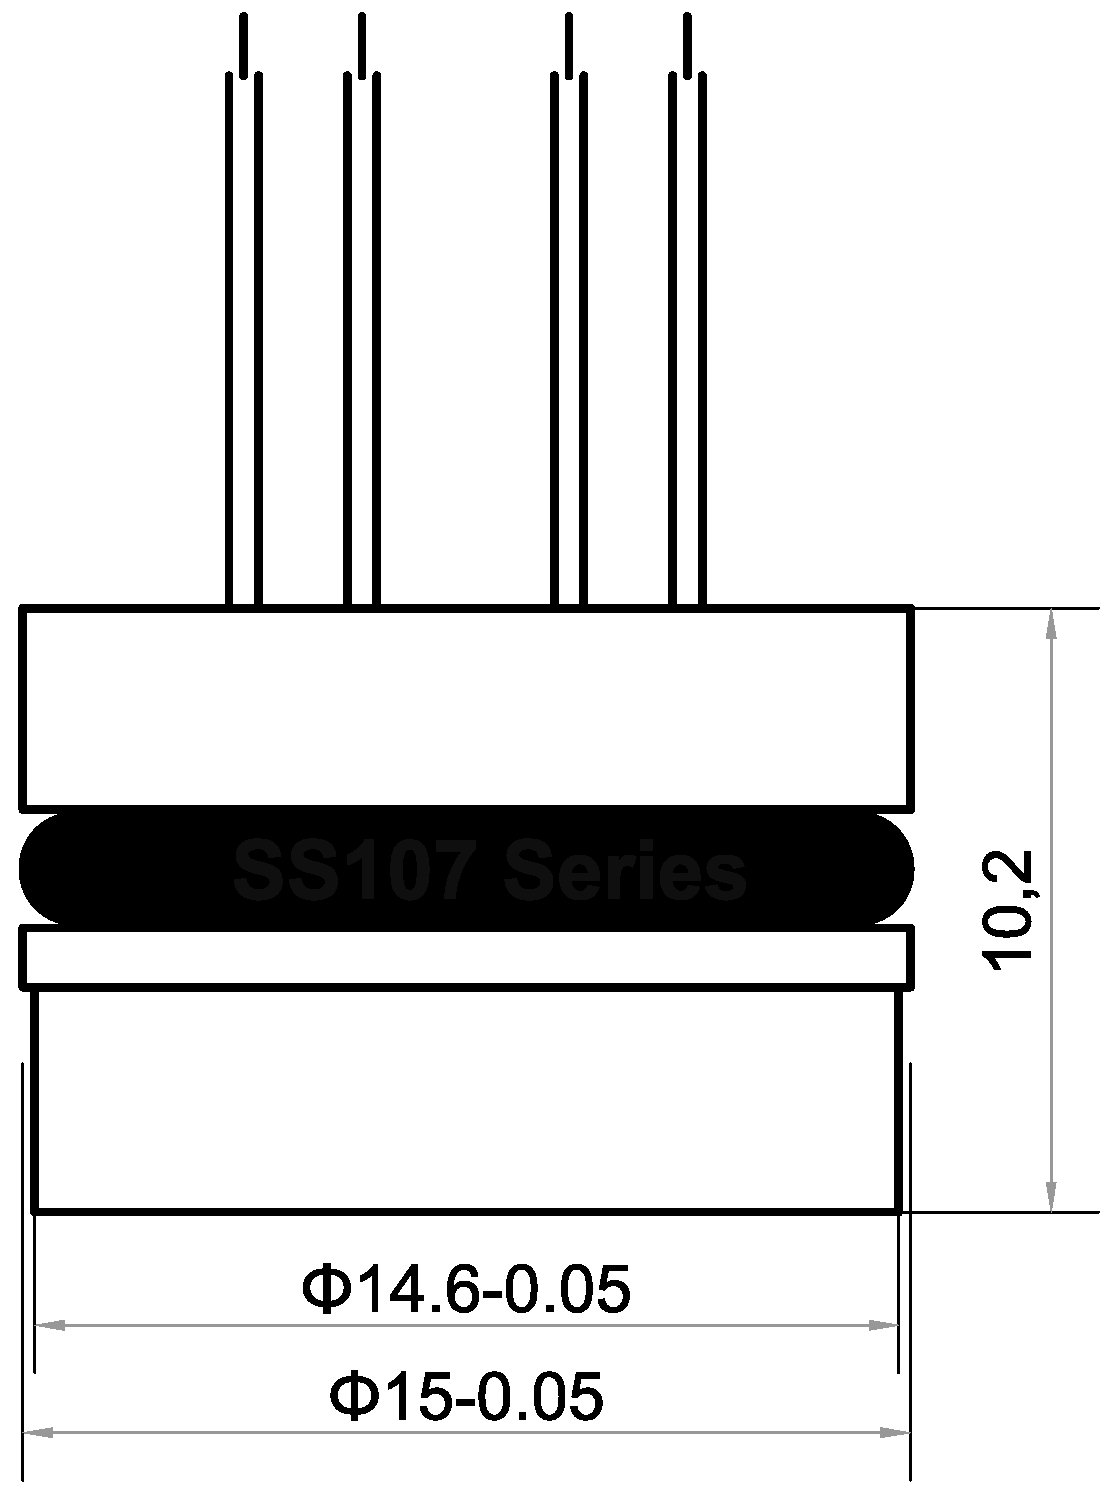 SS107 series Silicon piezoresistive pressure sensor